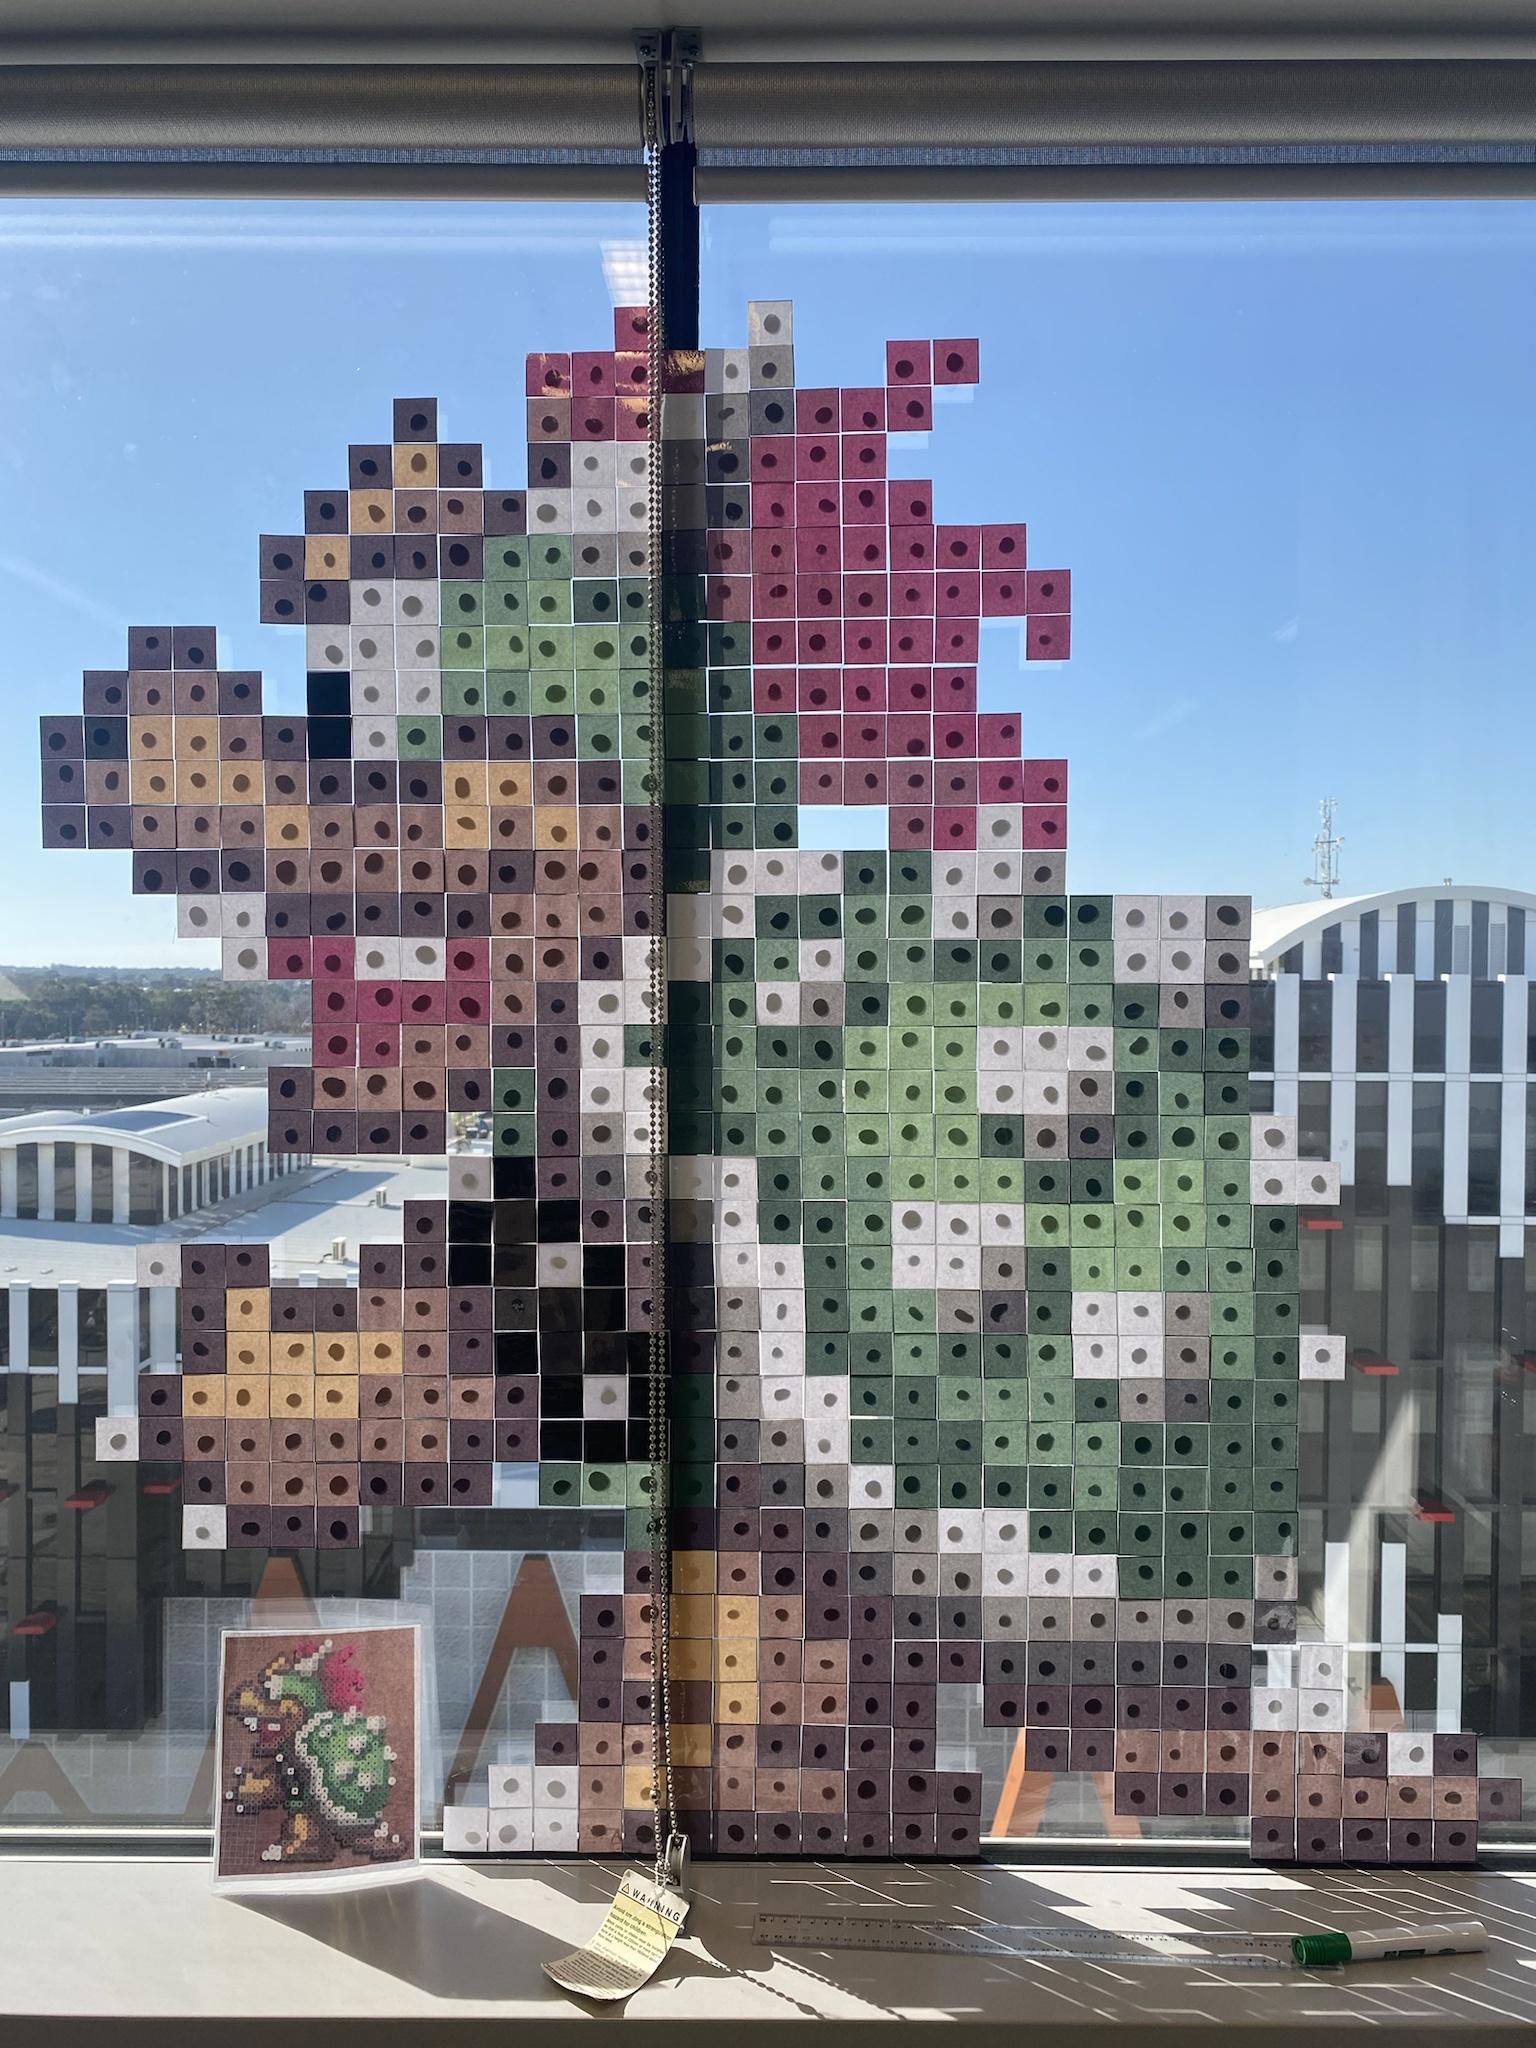 Bowser Pixel window art